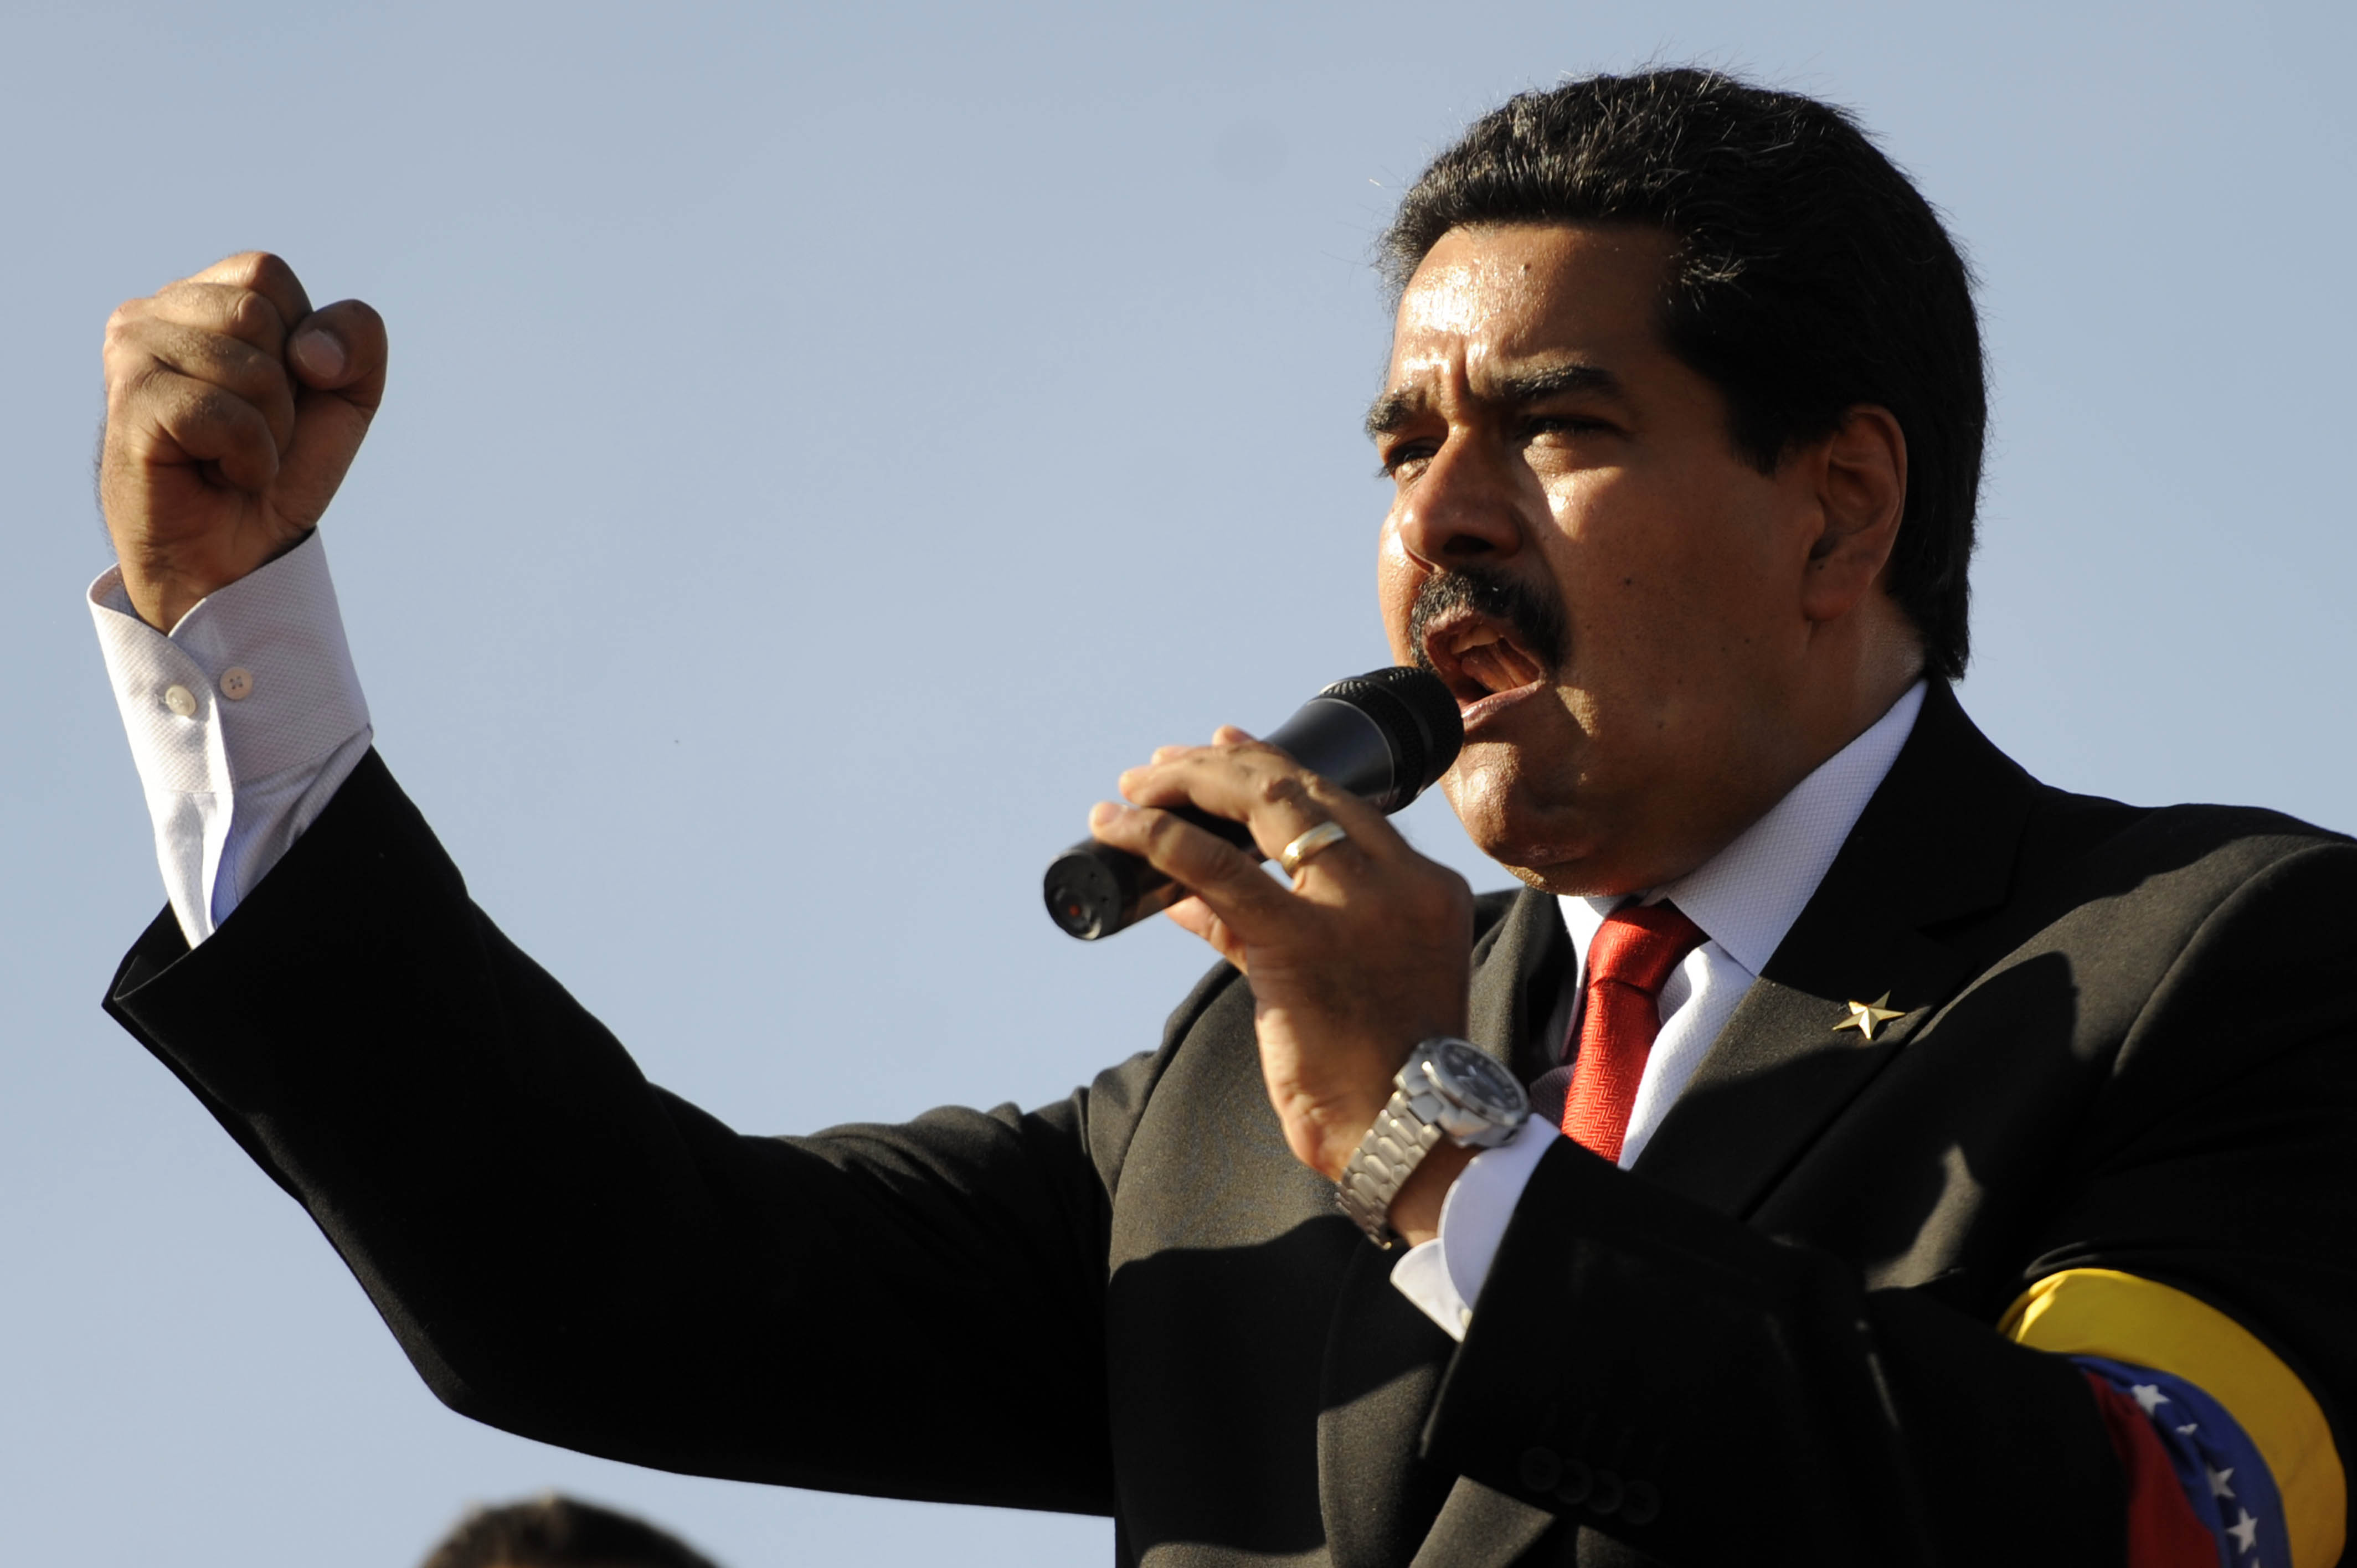 Acto de juramentación de Maduro será en el Palacio Federal Legislativo